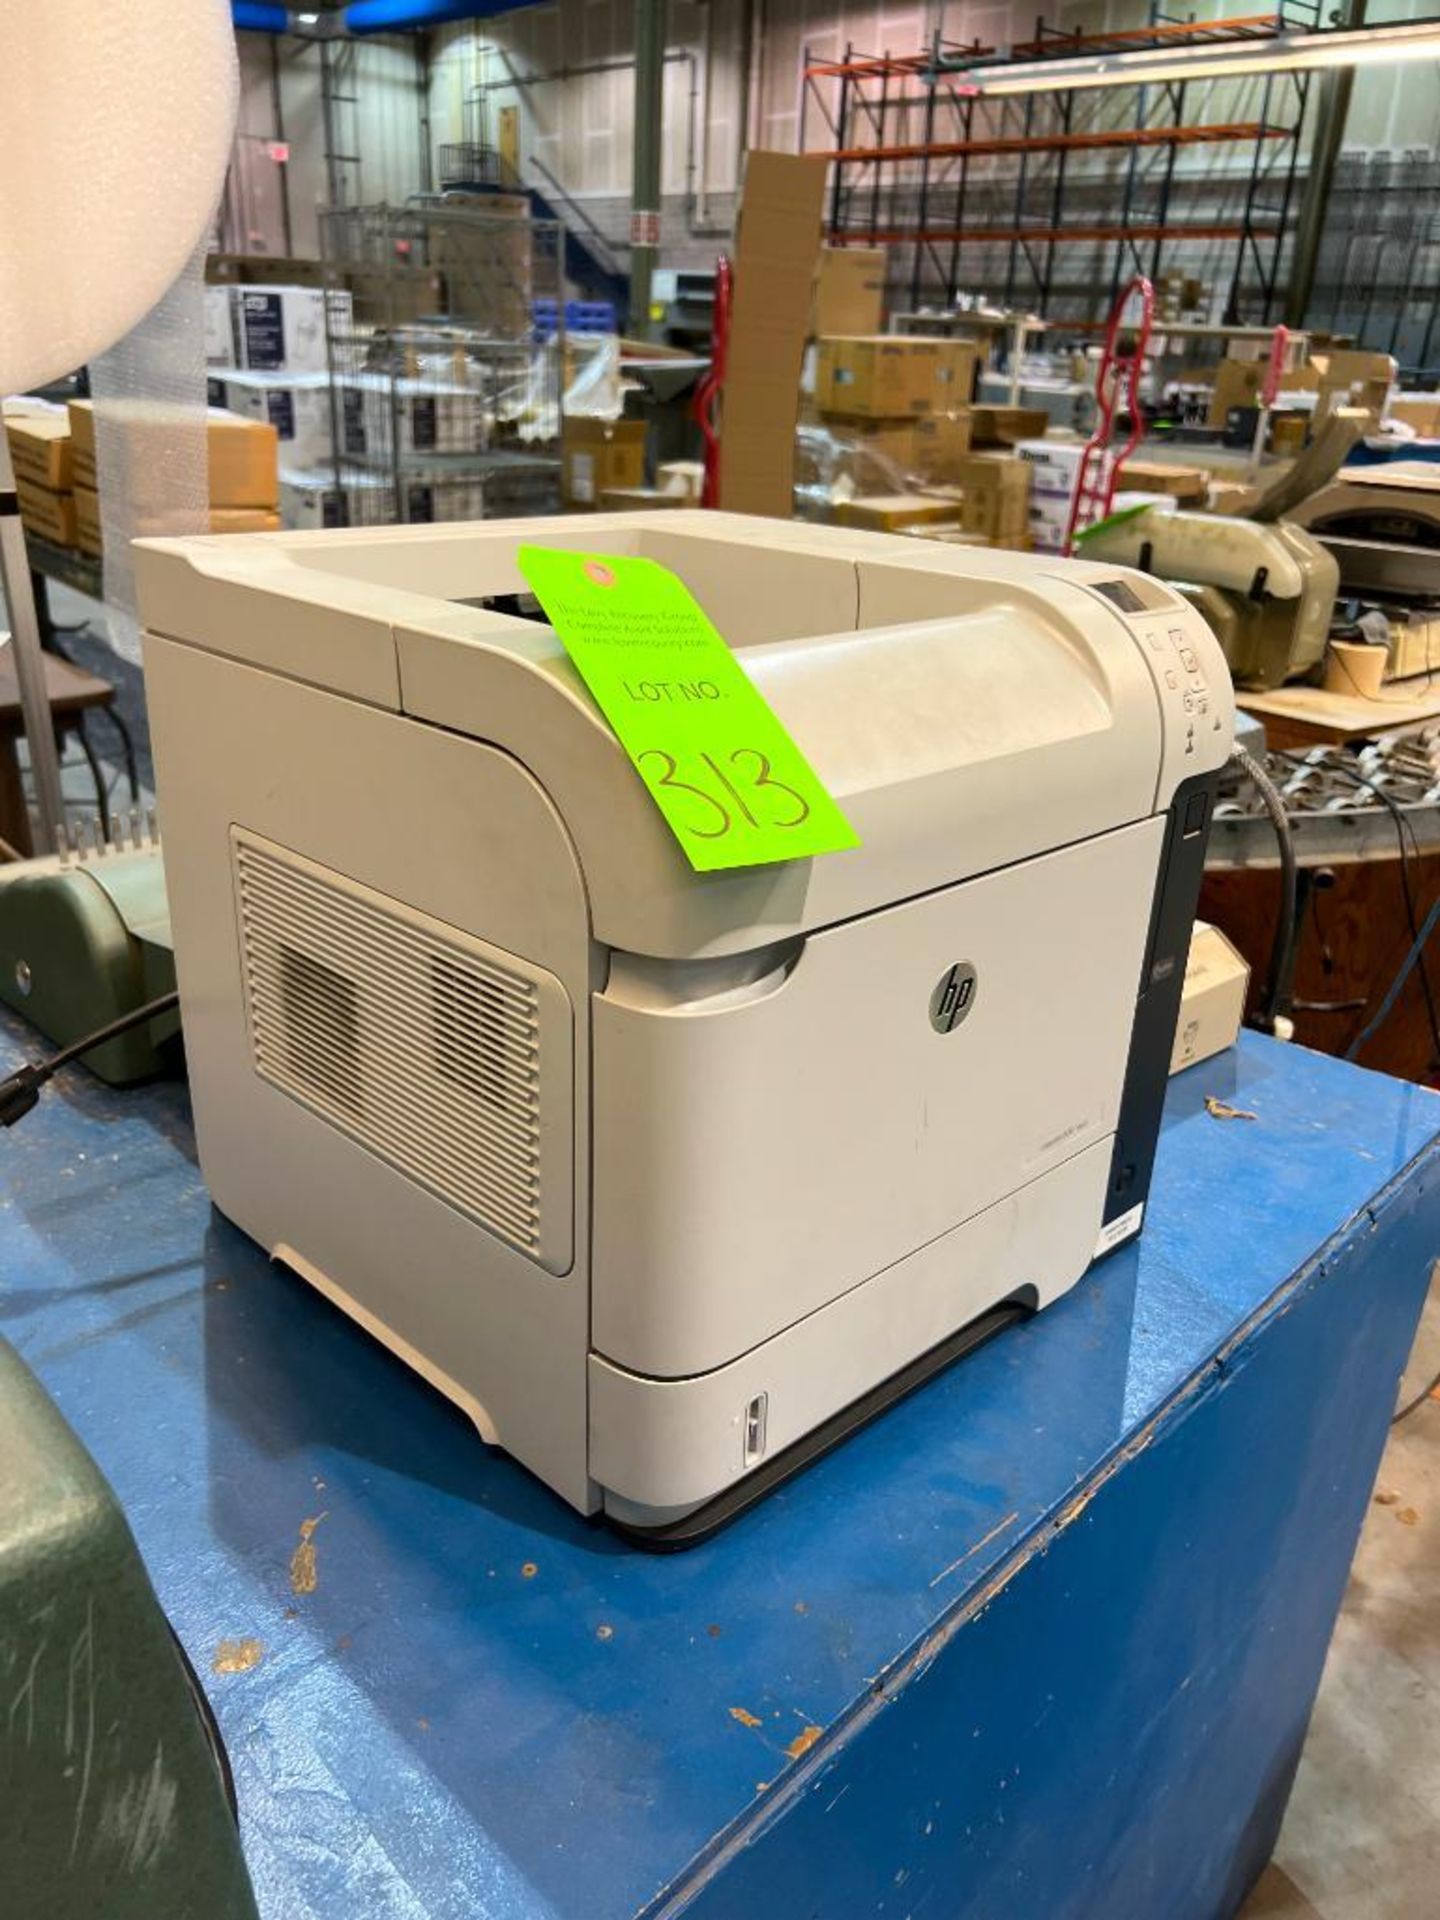 Hewlett-Packard Model600 M601 LaserJet Printer - Image 3 of 3